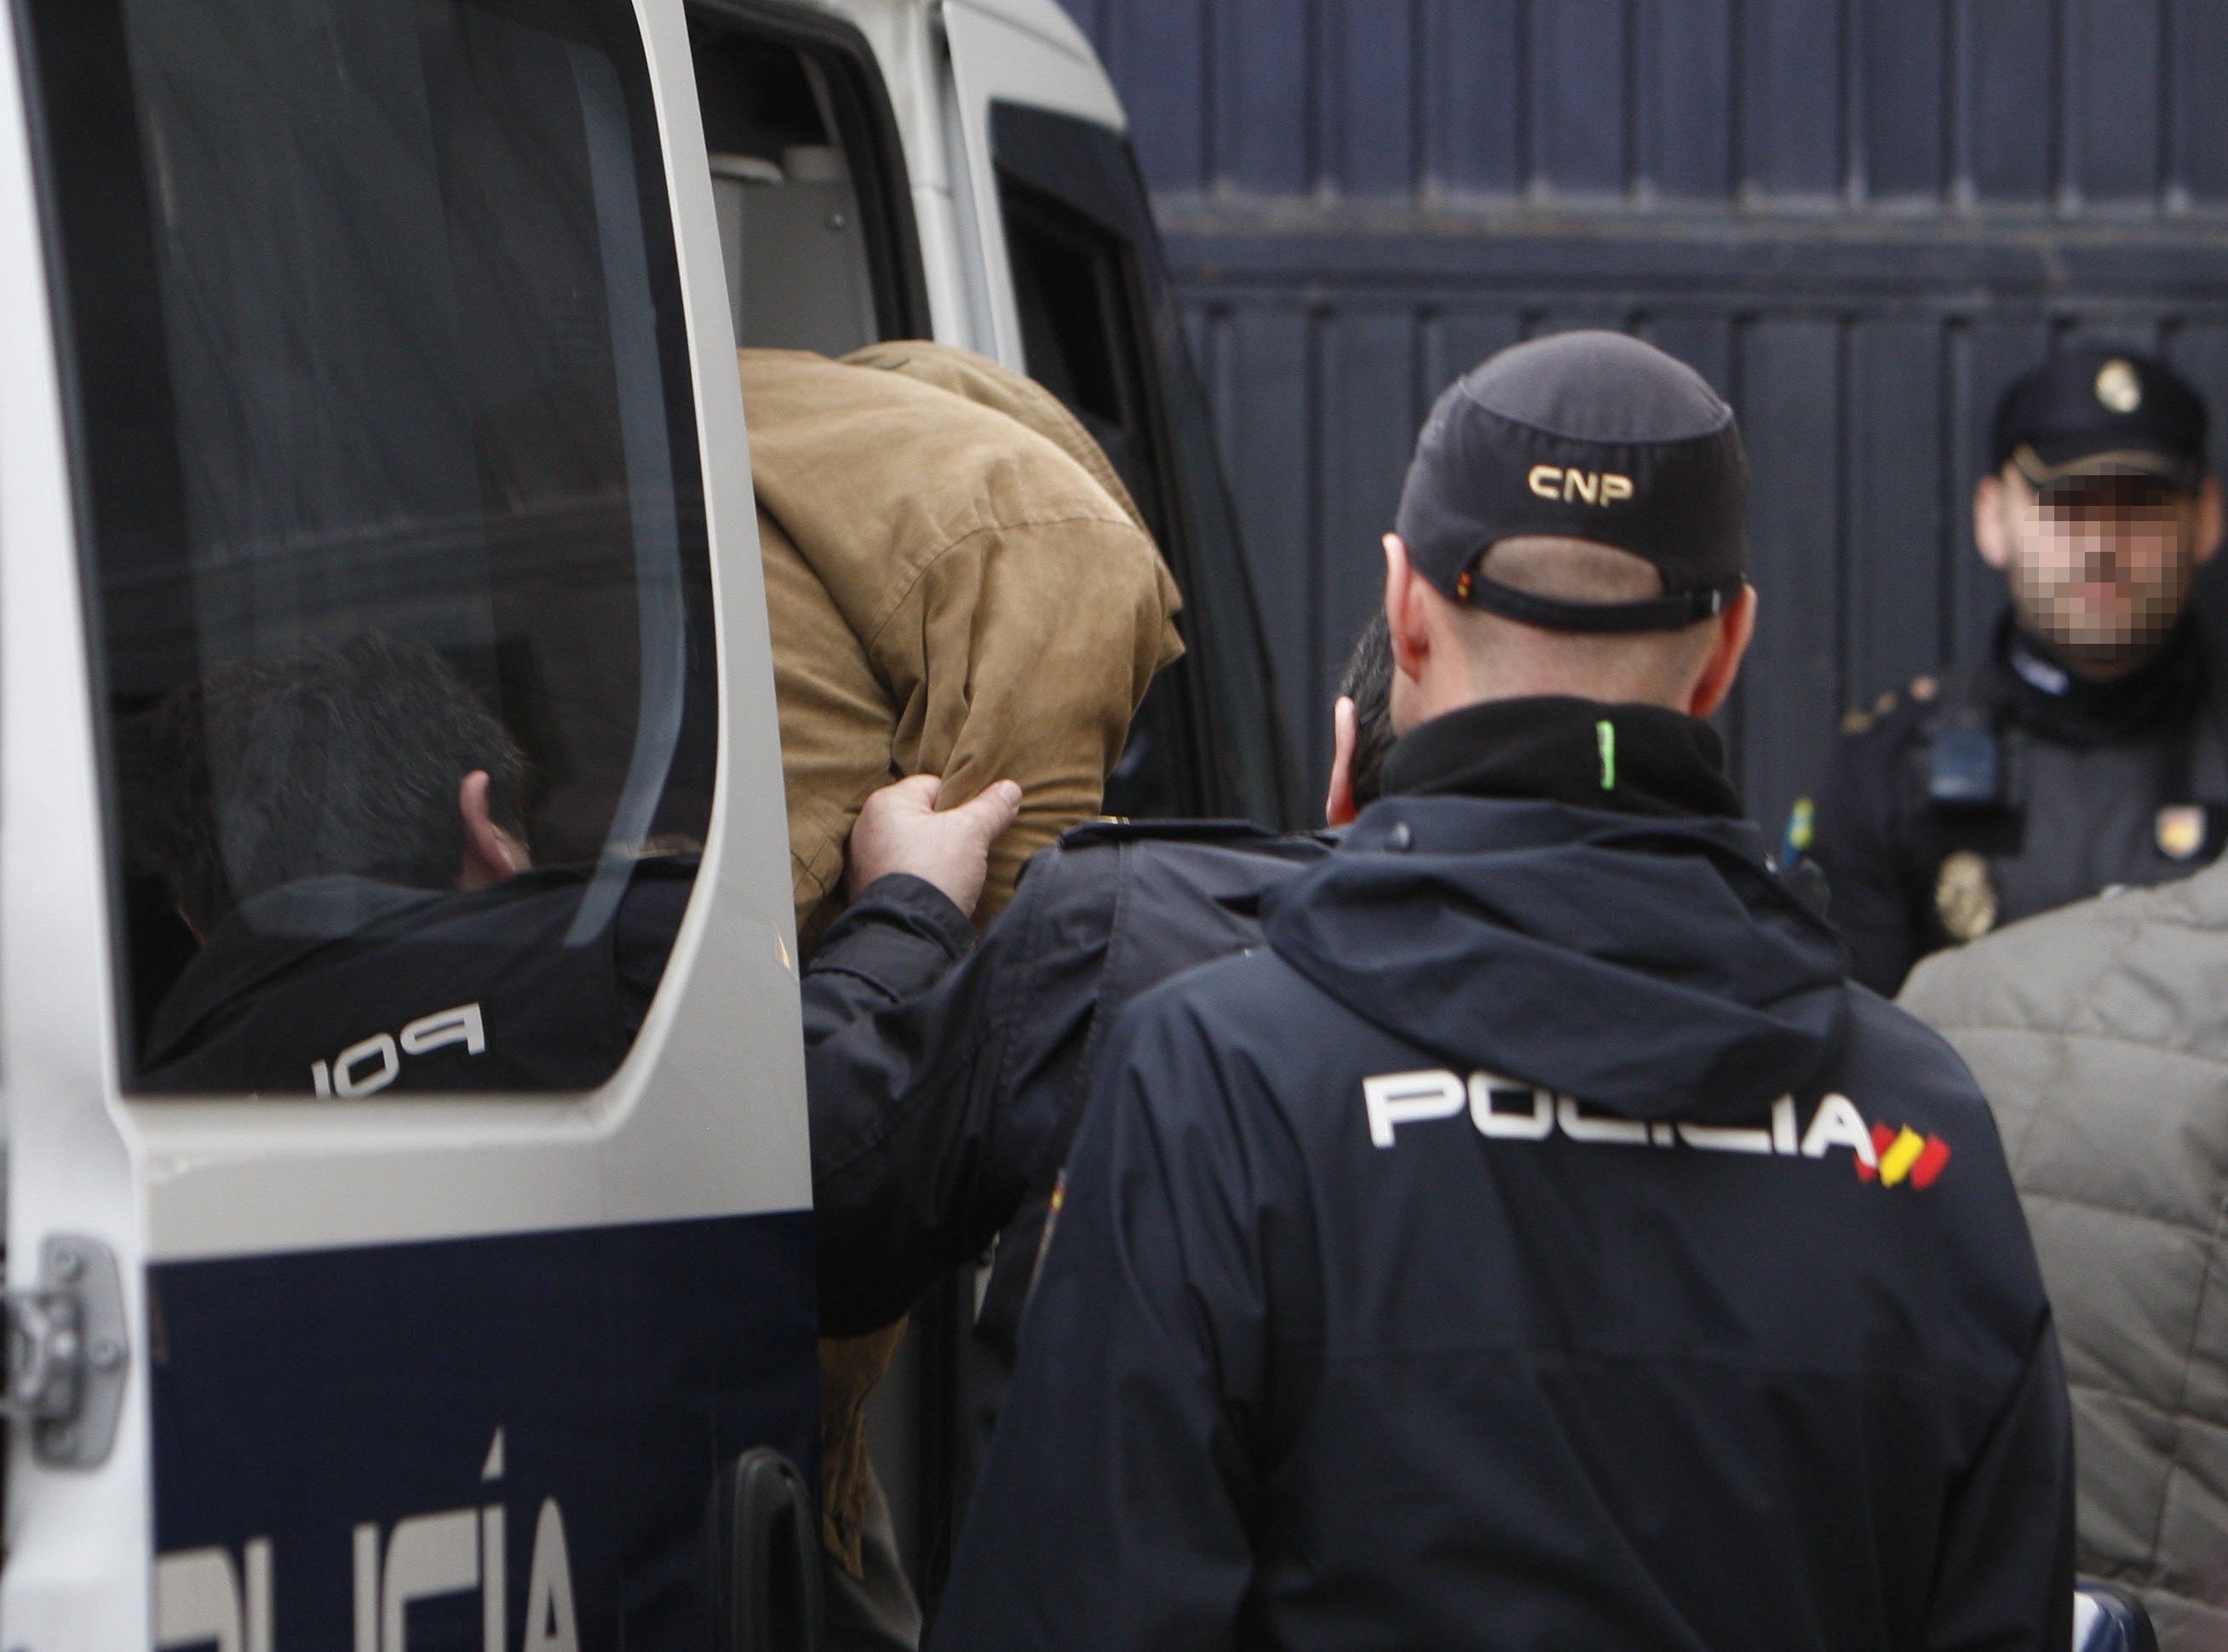 La Policía detiene en Ceuta a un hombre acusado de ser "pieza esencial" de Daesh